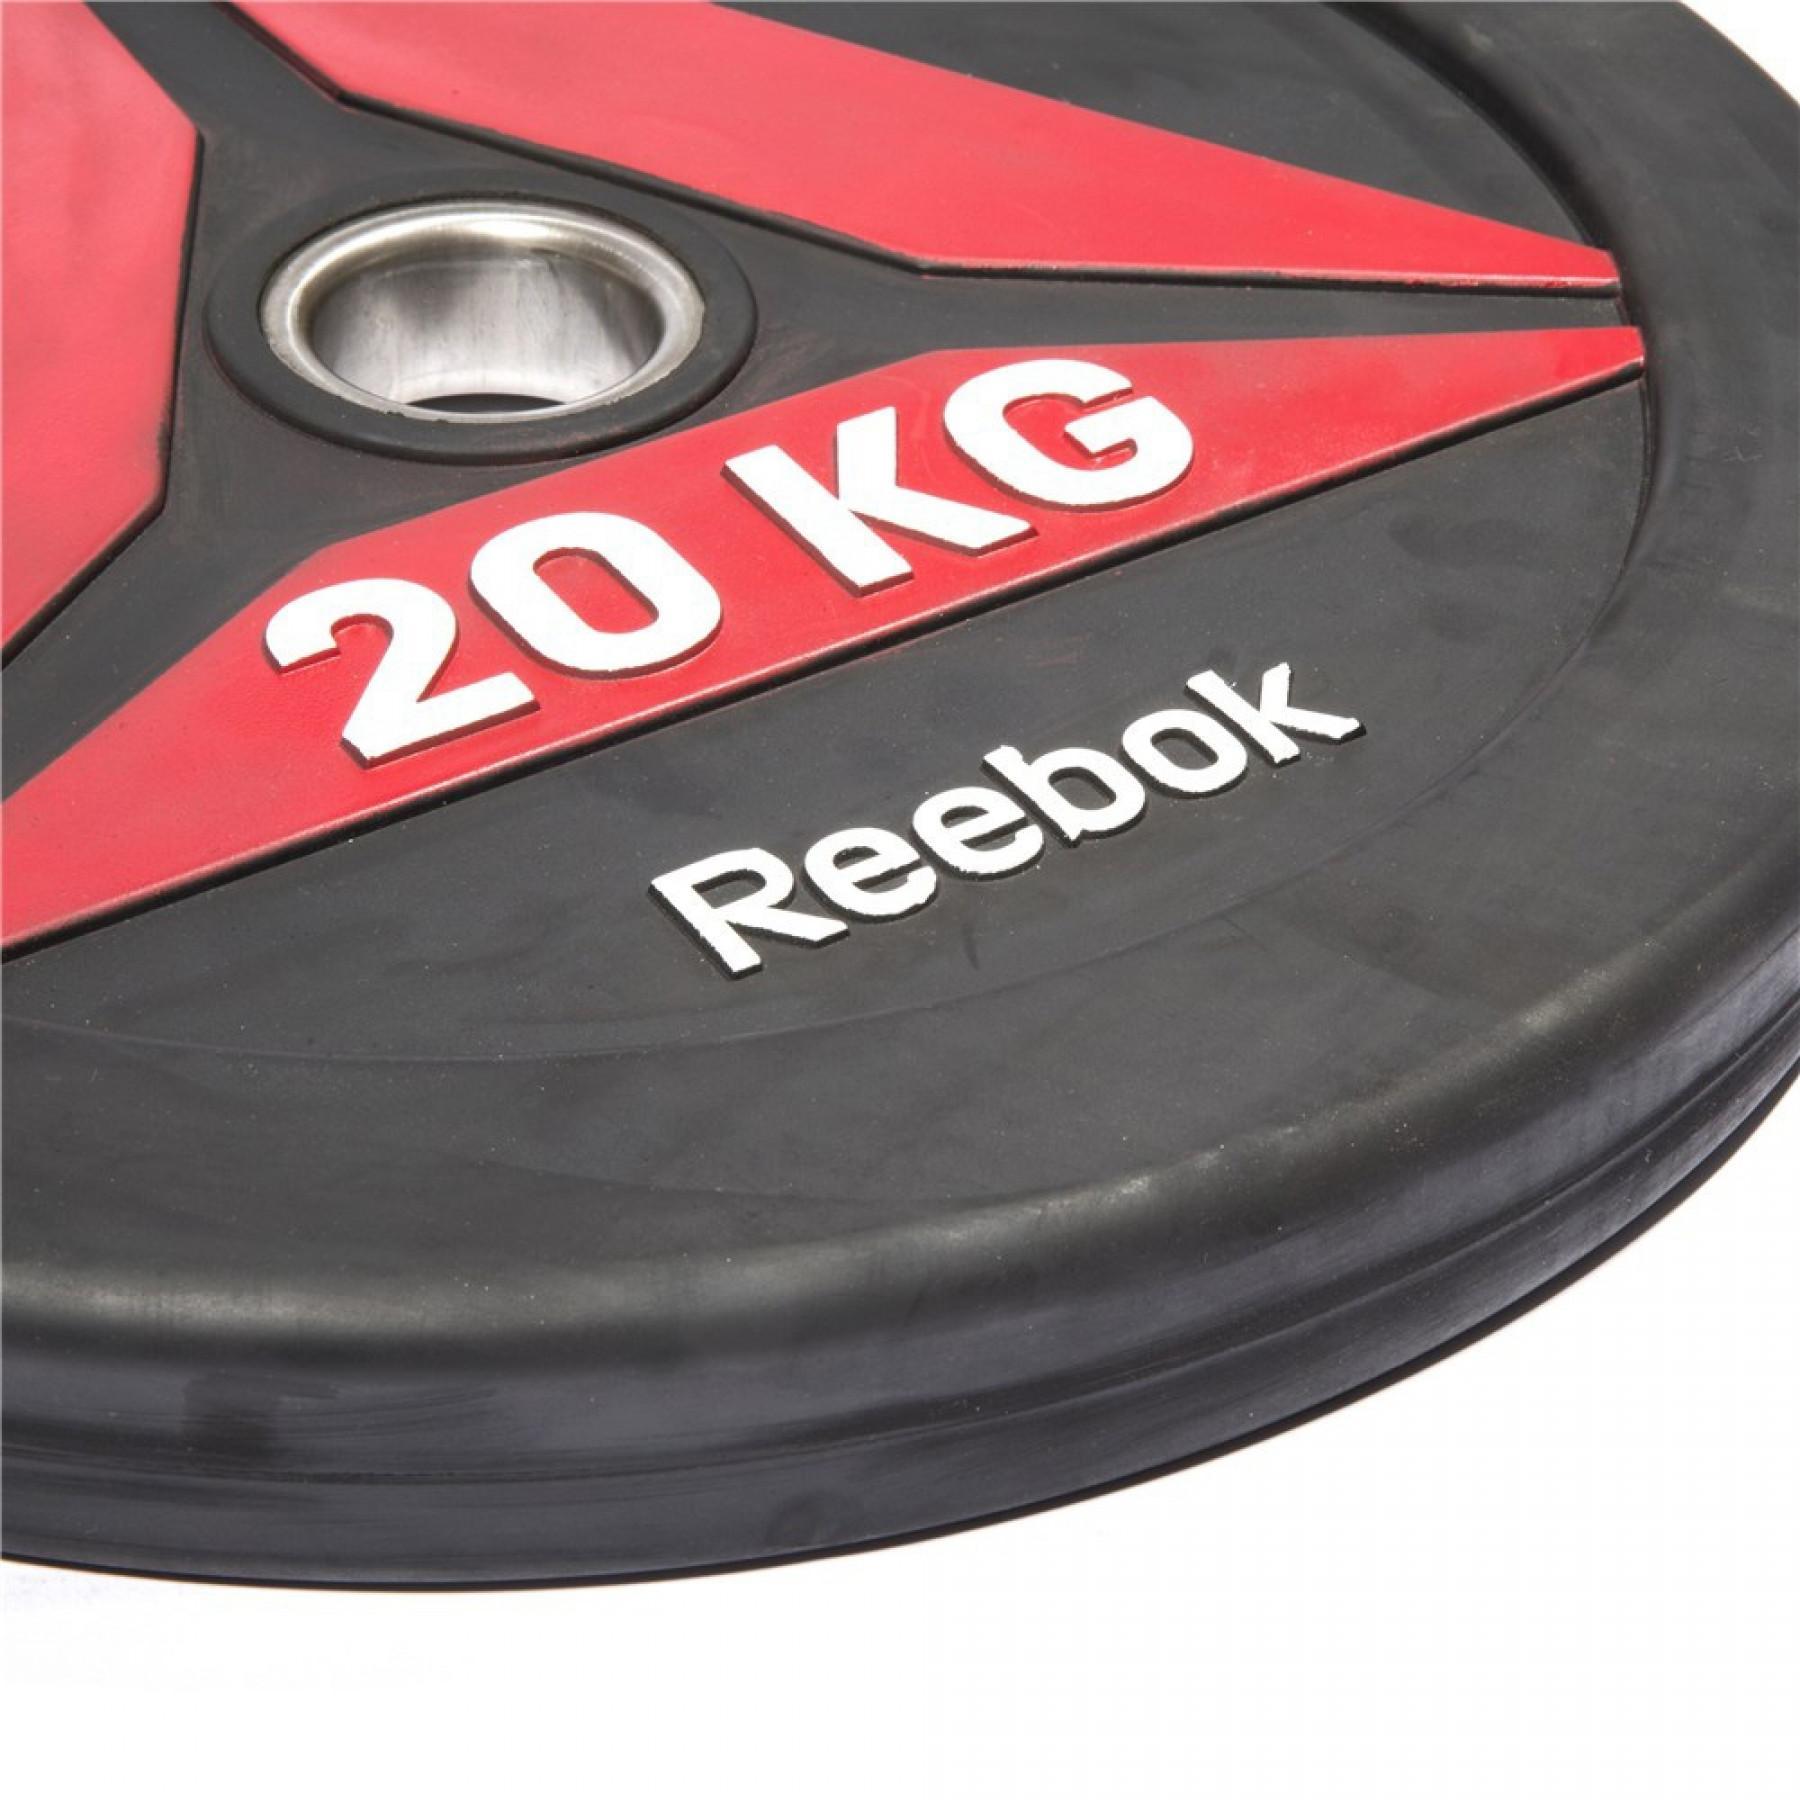 Disque bumper Reebok 5 kg